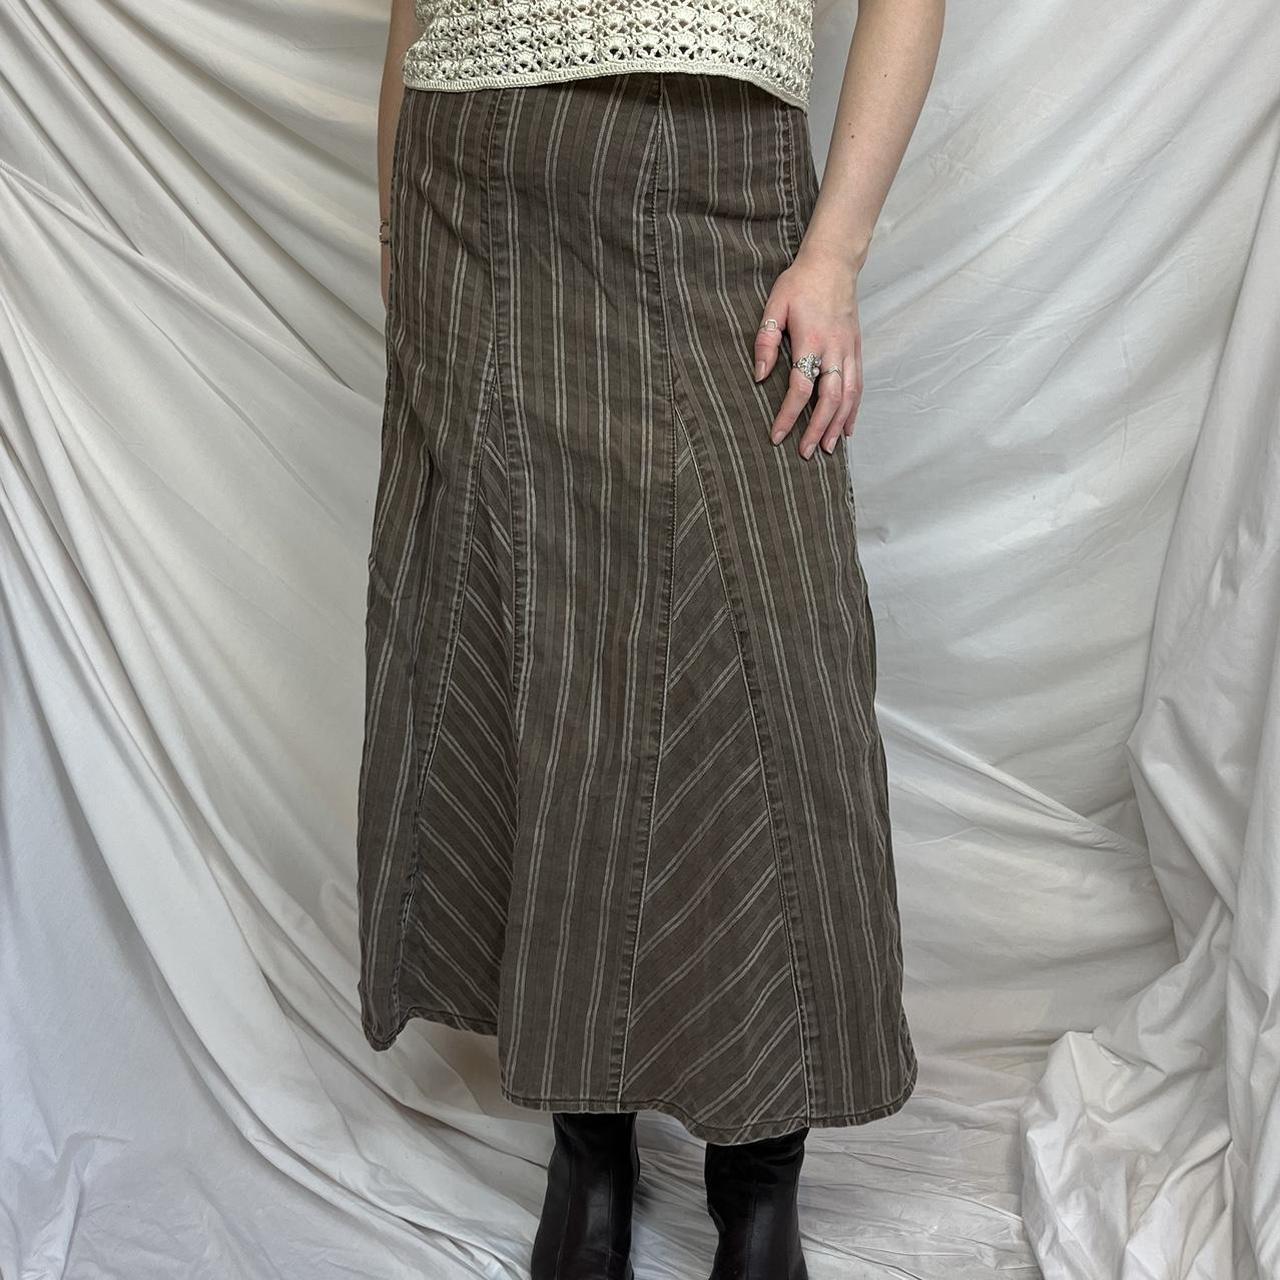 Vintage Pinstripe Maxi Skirt 90s / Y2K brown and... - Depop